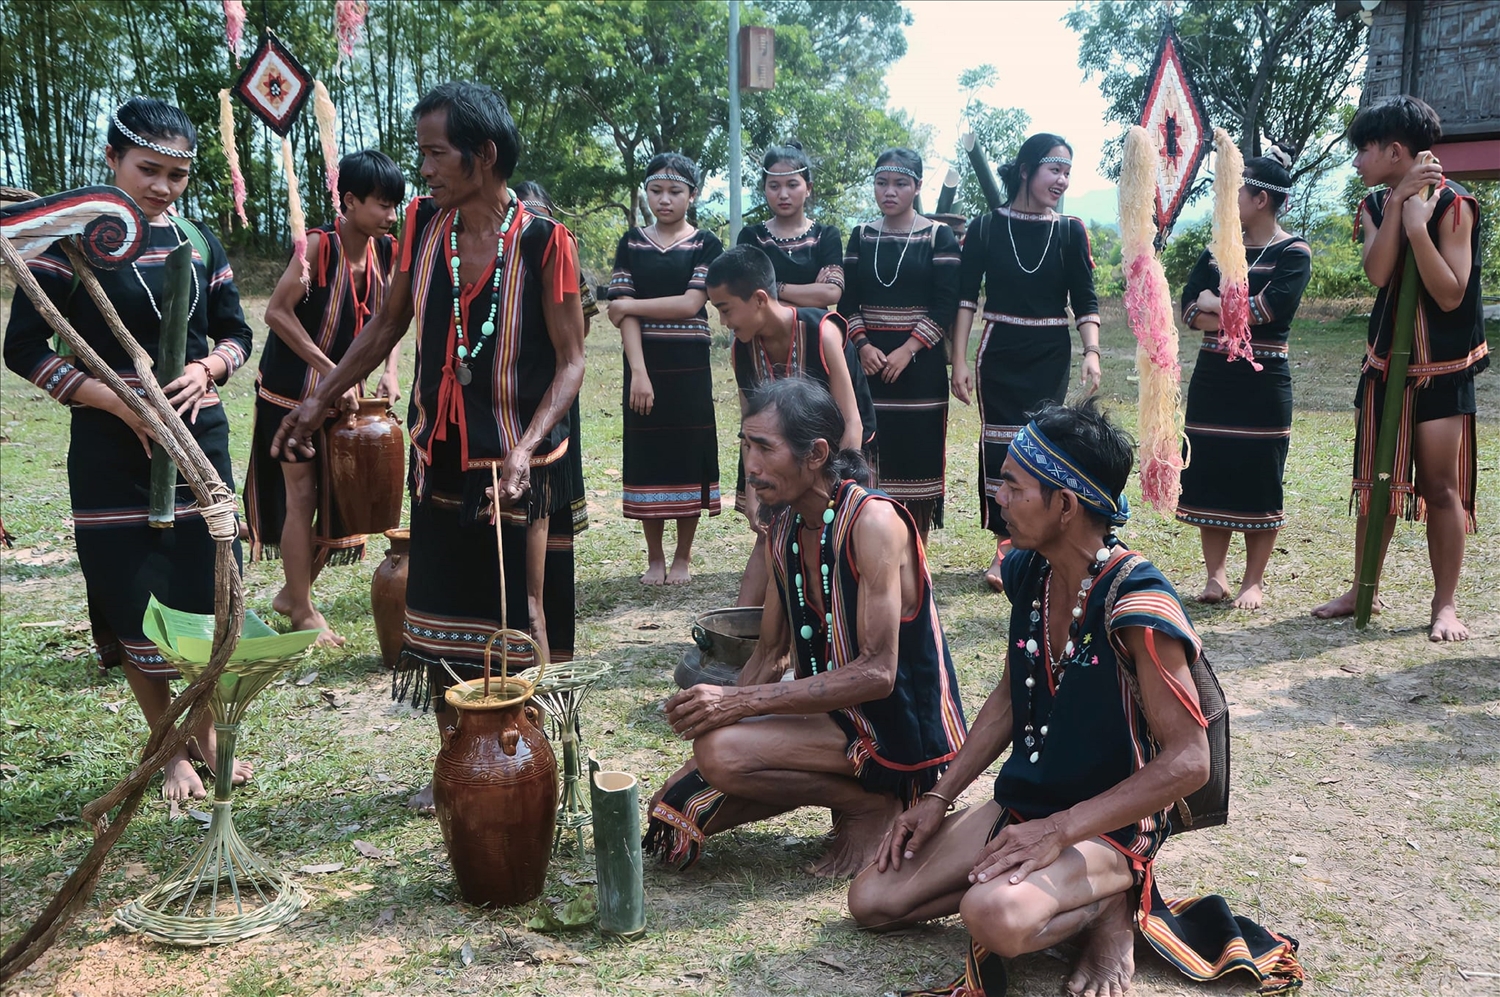 Nghệ nhân A Thuih cùng người làng cúng giọt nước đầu năm theo phong tục của dân tộc.